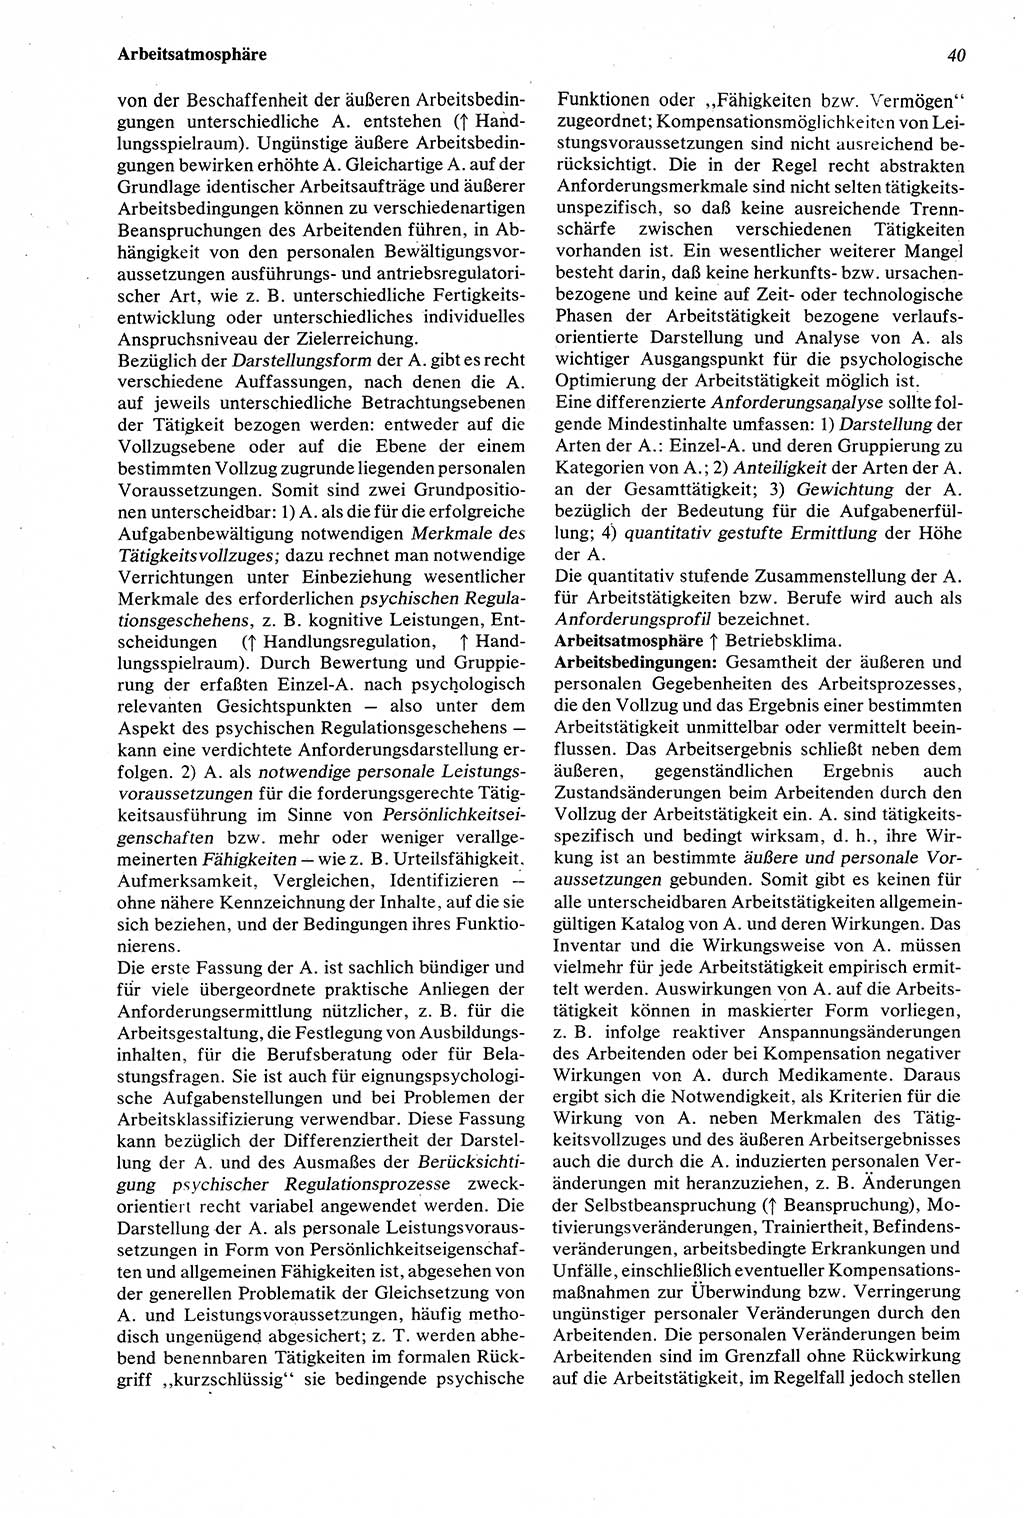 Wörterbuch der Psychologie [Deutsche Demokratische Republik (DDR)] 1976, Seite 40 (Wb. Psych. DDR 1976, S. 40)